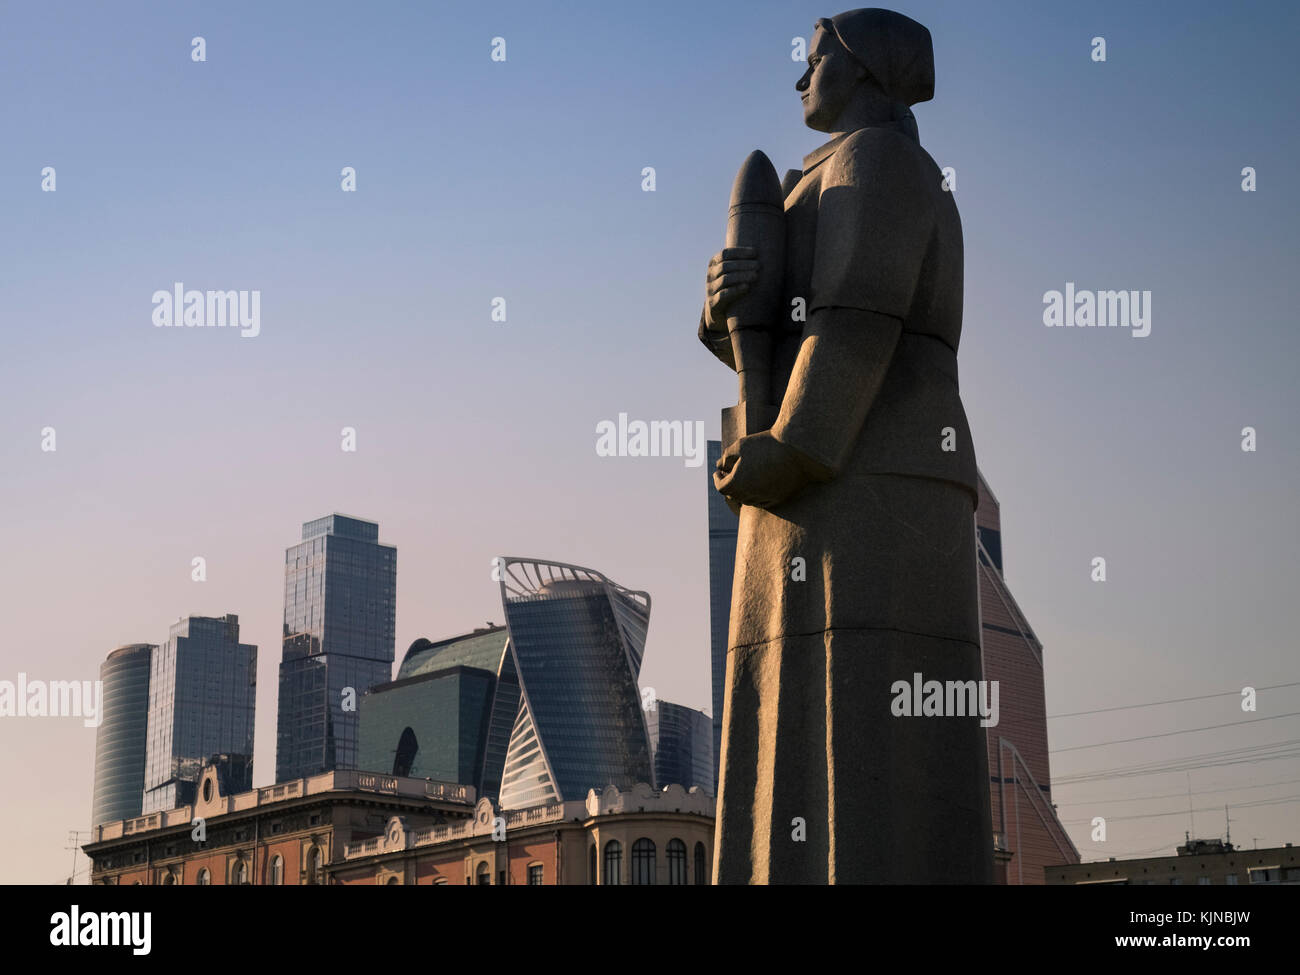 Un sovietico WW2 monumento nel distretto di Dorogomilovo, con un moderno centro Business Internazionale di grattacieli in background, Mosca, Russia. Foto Stock